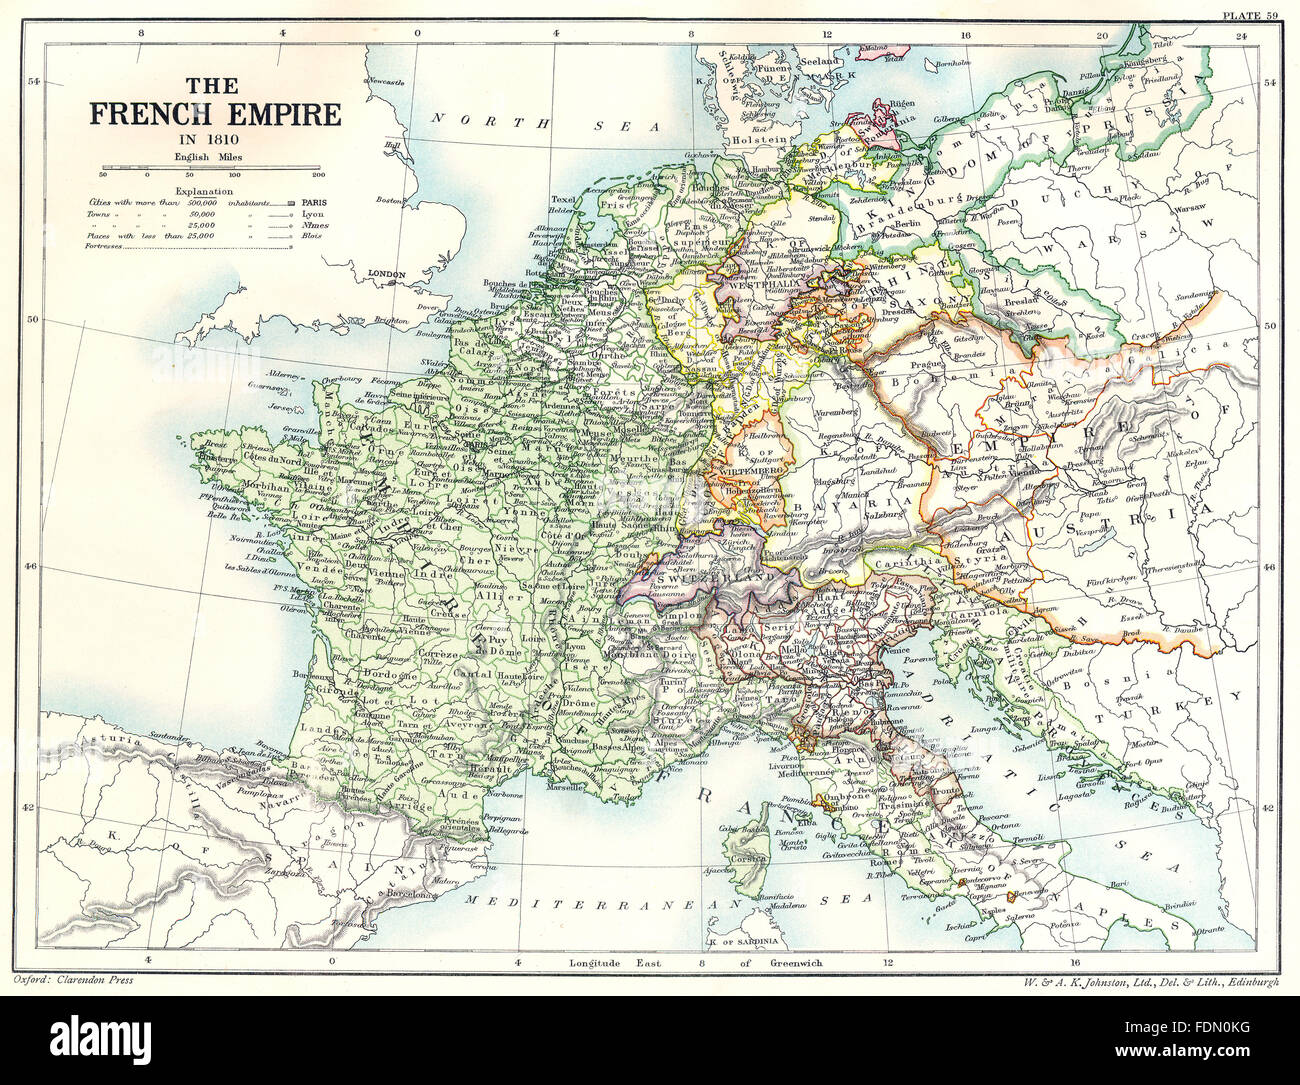 Francia: El imperio francés en 1810, 1903 mapa antiguo Foto de stock